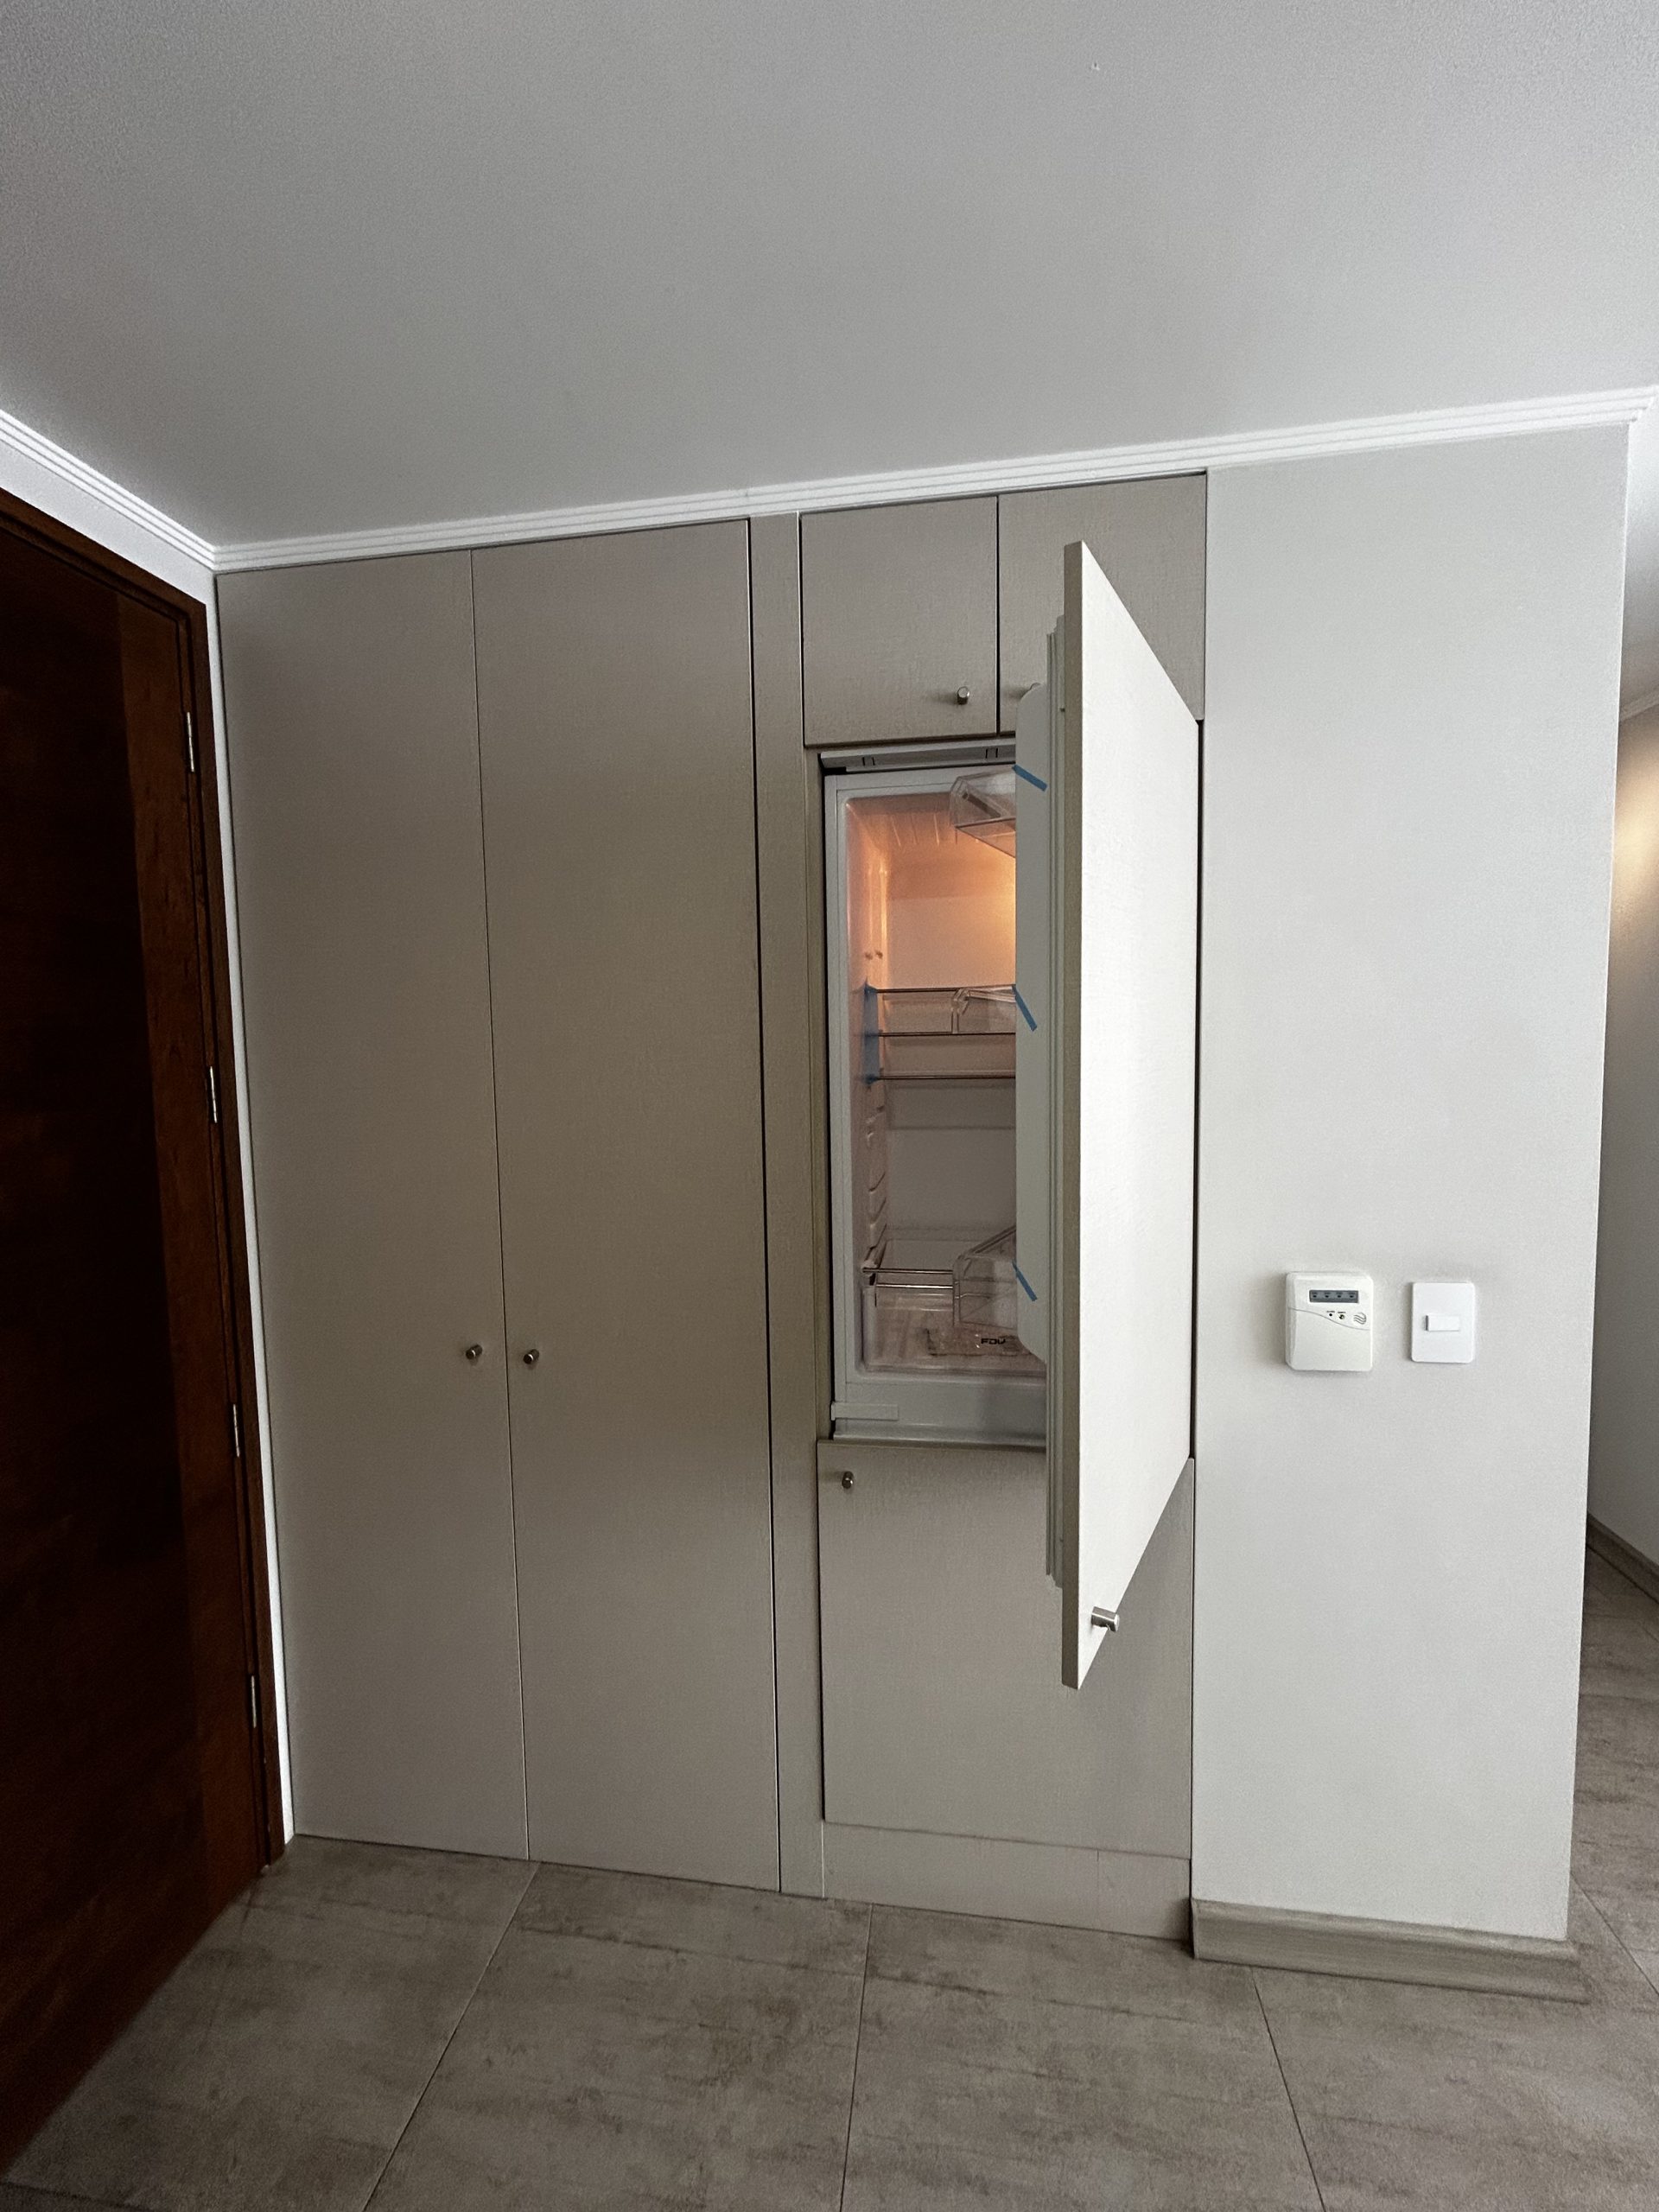 Imagen del refrigerador empotrado en la cocina del proyecto Inés de Suárez, La Florida